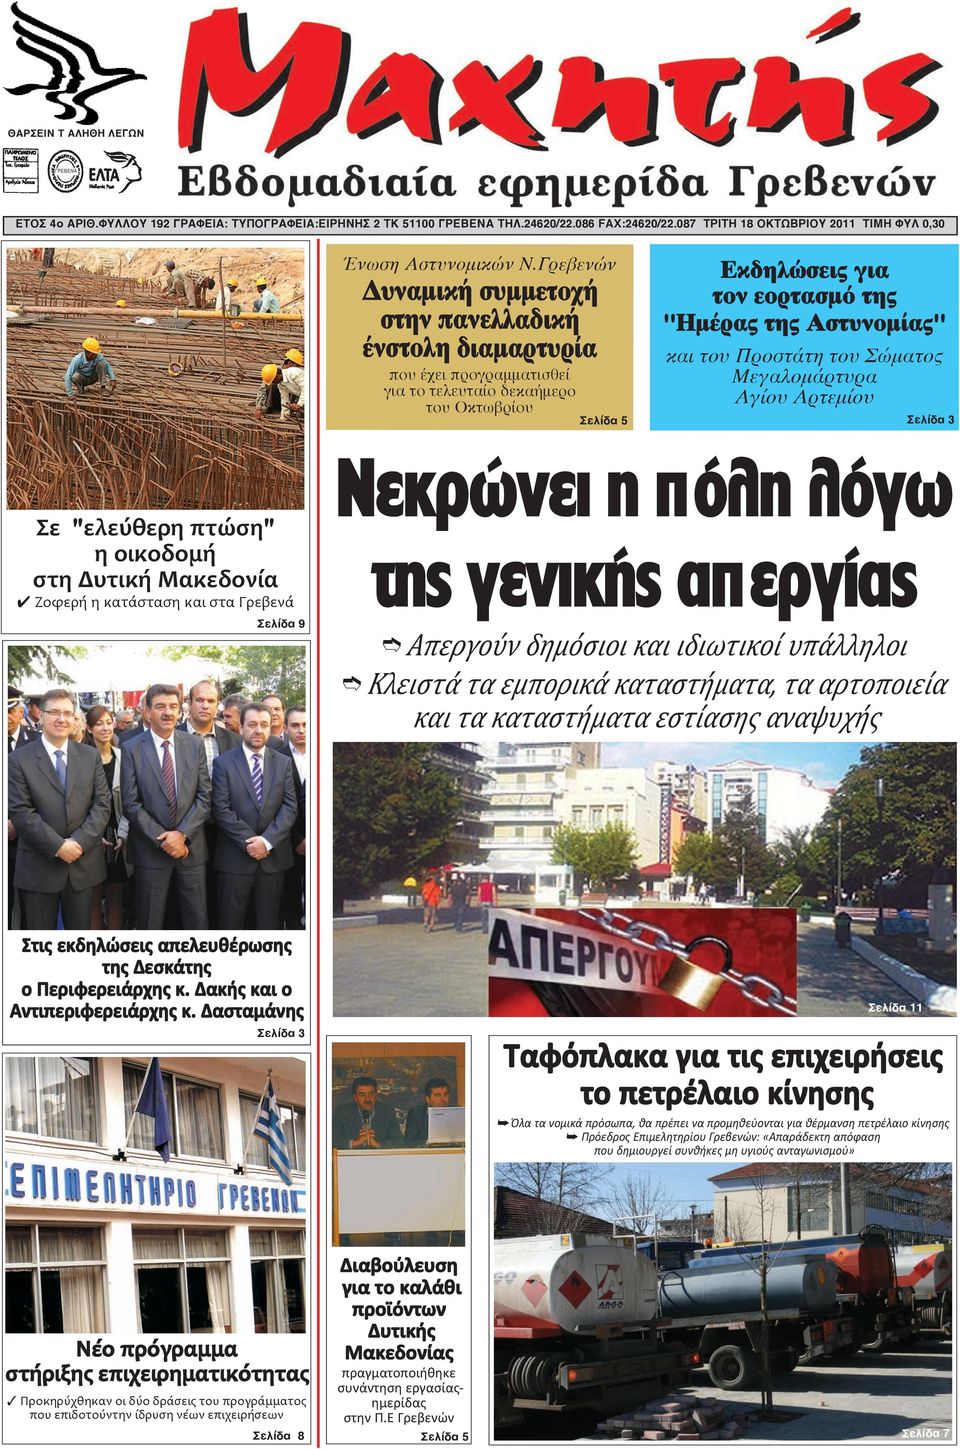 Προστάτη του Σώματος Μεγαλομάρτυρα Αγίου Αρτεμίου Σελίδα 5 Σελίδα 3 Σε "ελεύθερη πτώση" η οικοδομή στη Δυτική Μακεδονία 4 Ζοφερή η κατάσταση και στα Γρεβενά Σελίδα 9 Νεκρώνει η πόλη λόγω της γενικής